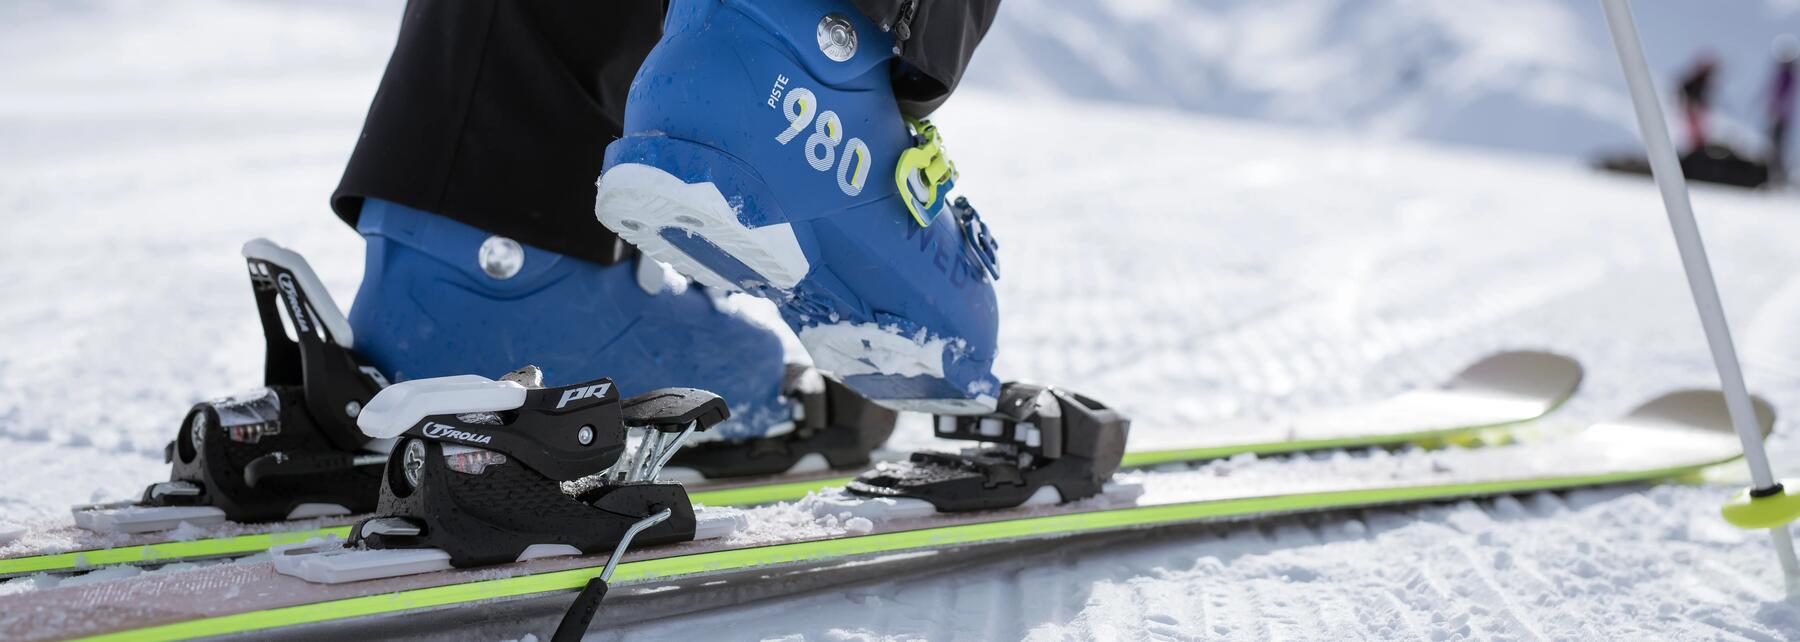 Je ski's slijpen en waxen | Decathlon.nl